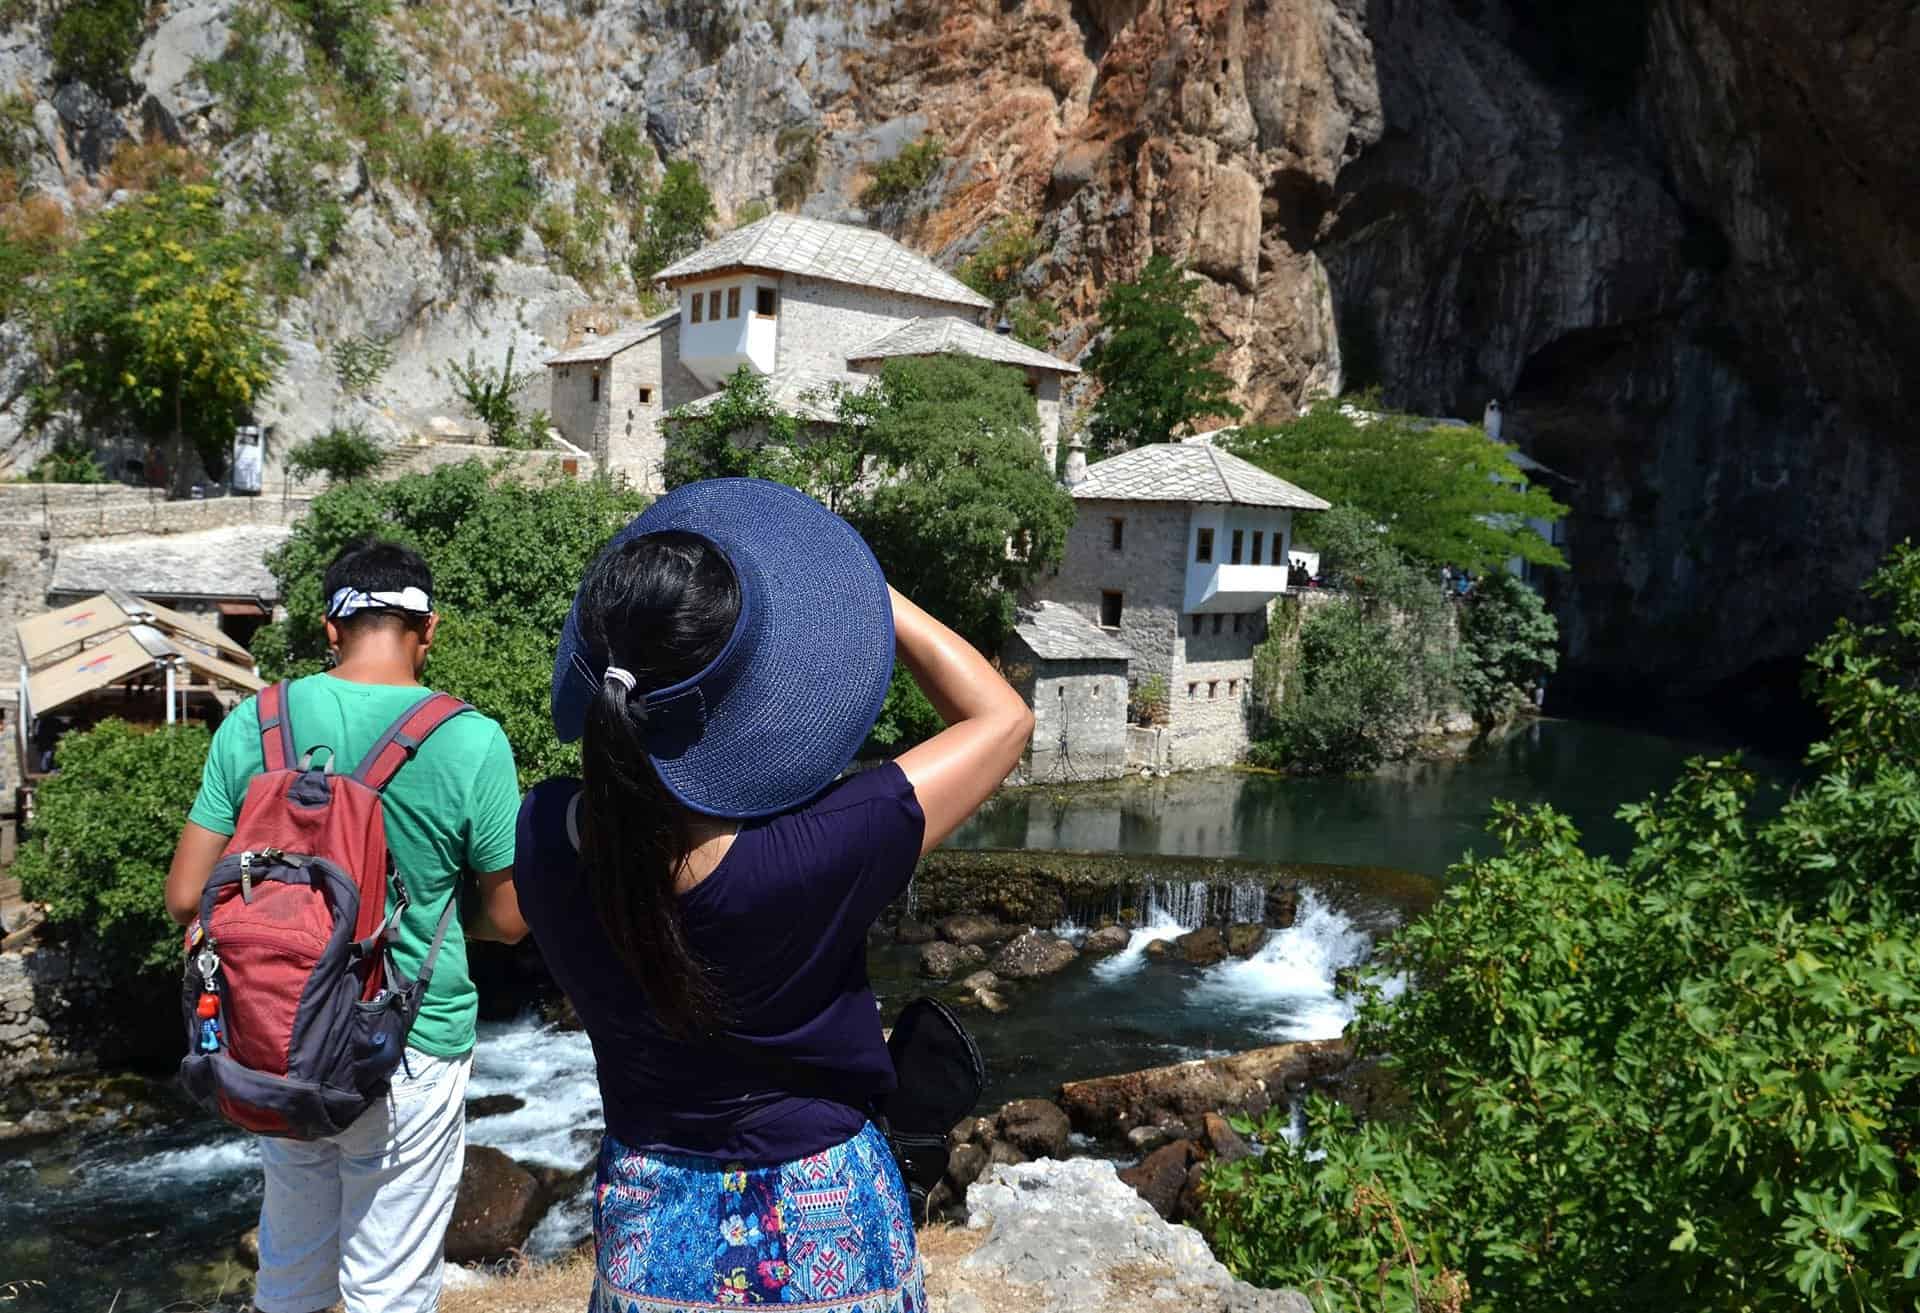 Porast broja turista u Bosni i Hercegovini